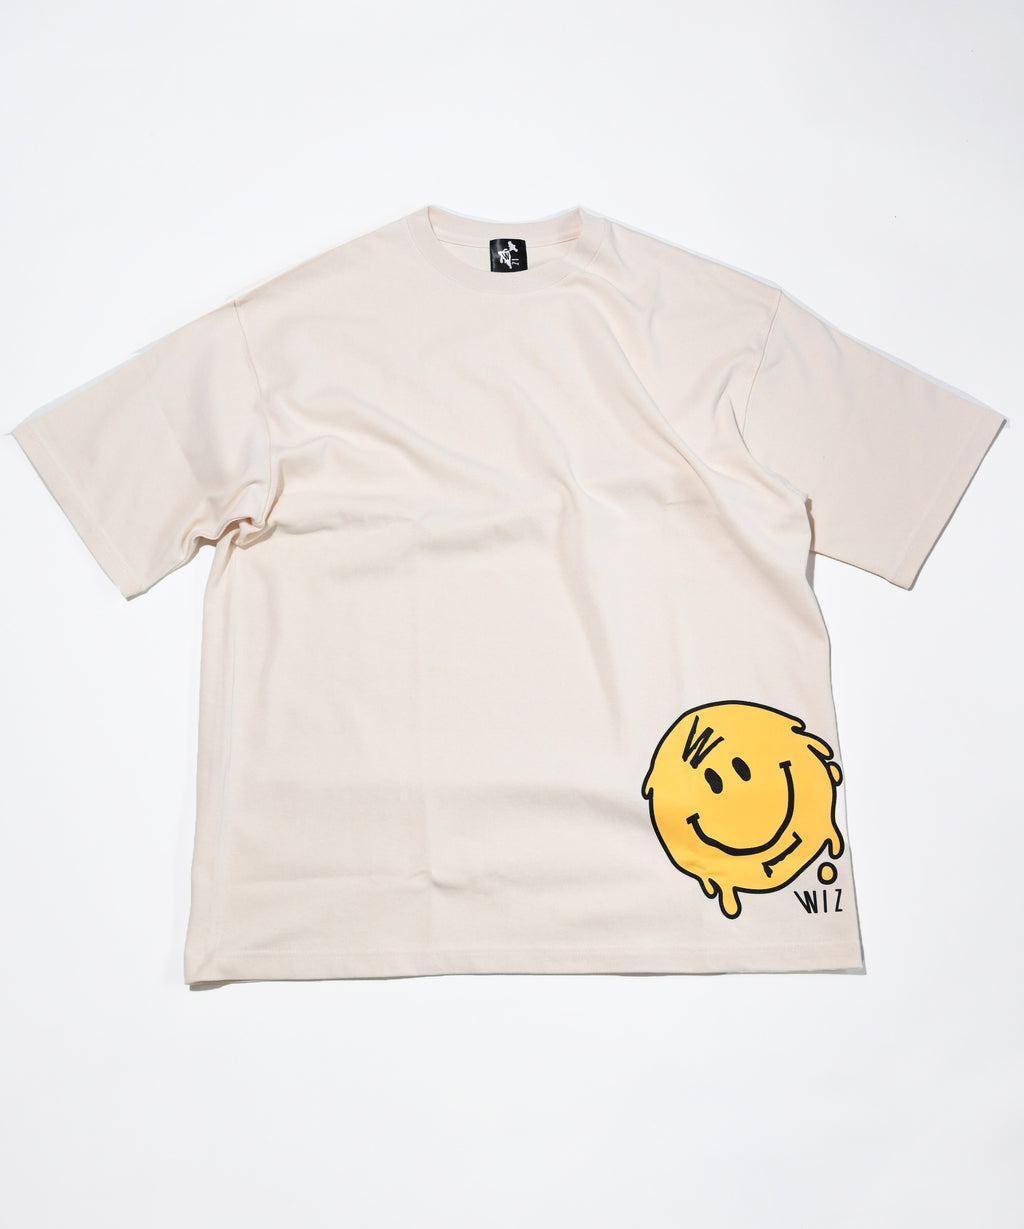 【予約販売】SMILE BIG TEE (MEN'S) / スマイルTシャツ / White